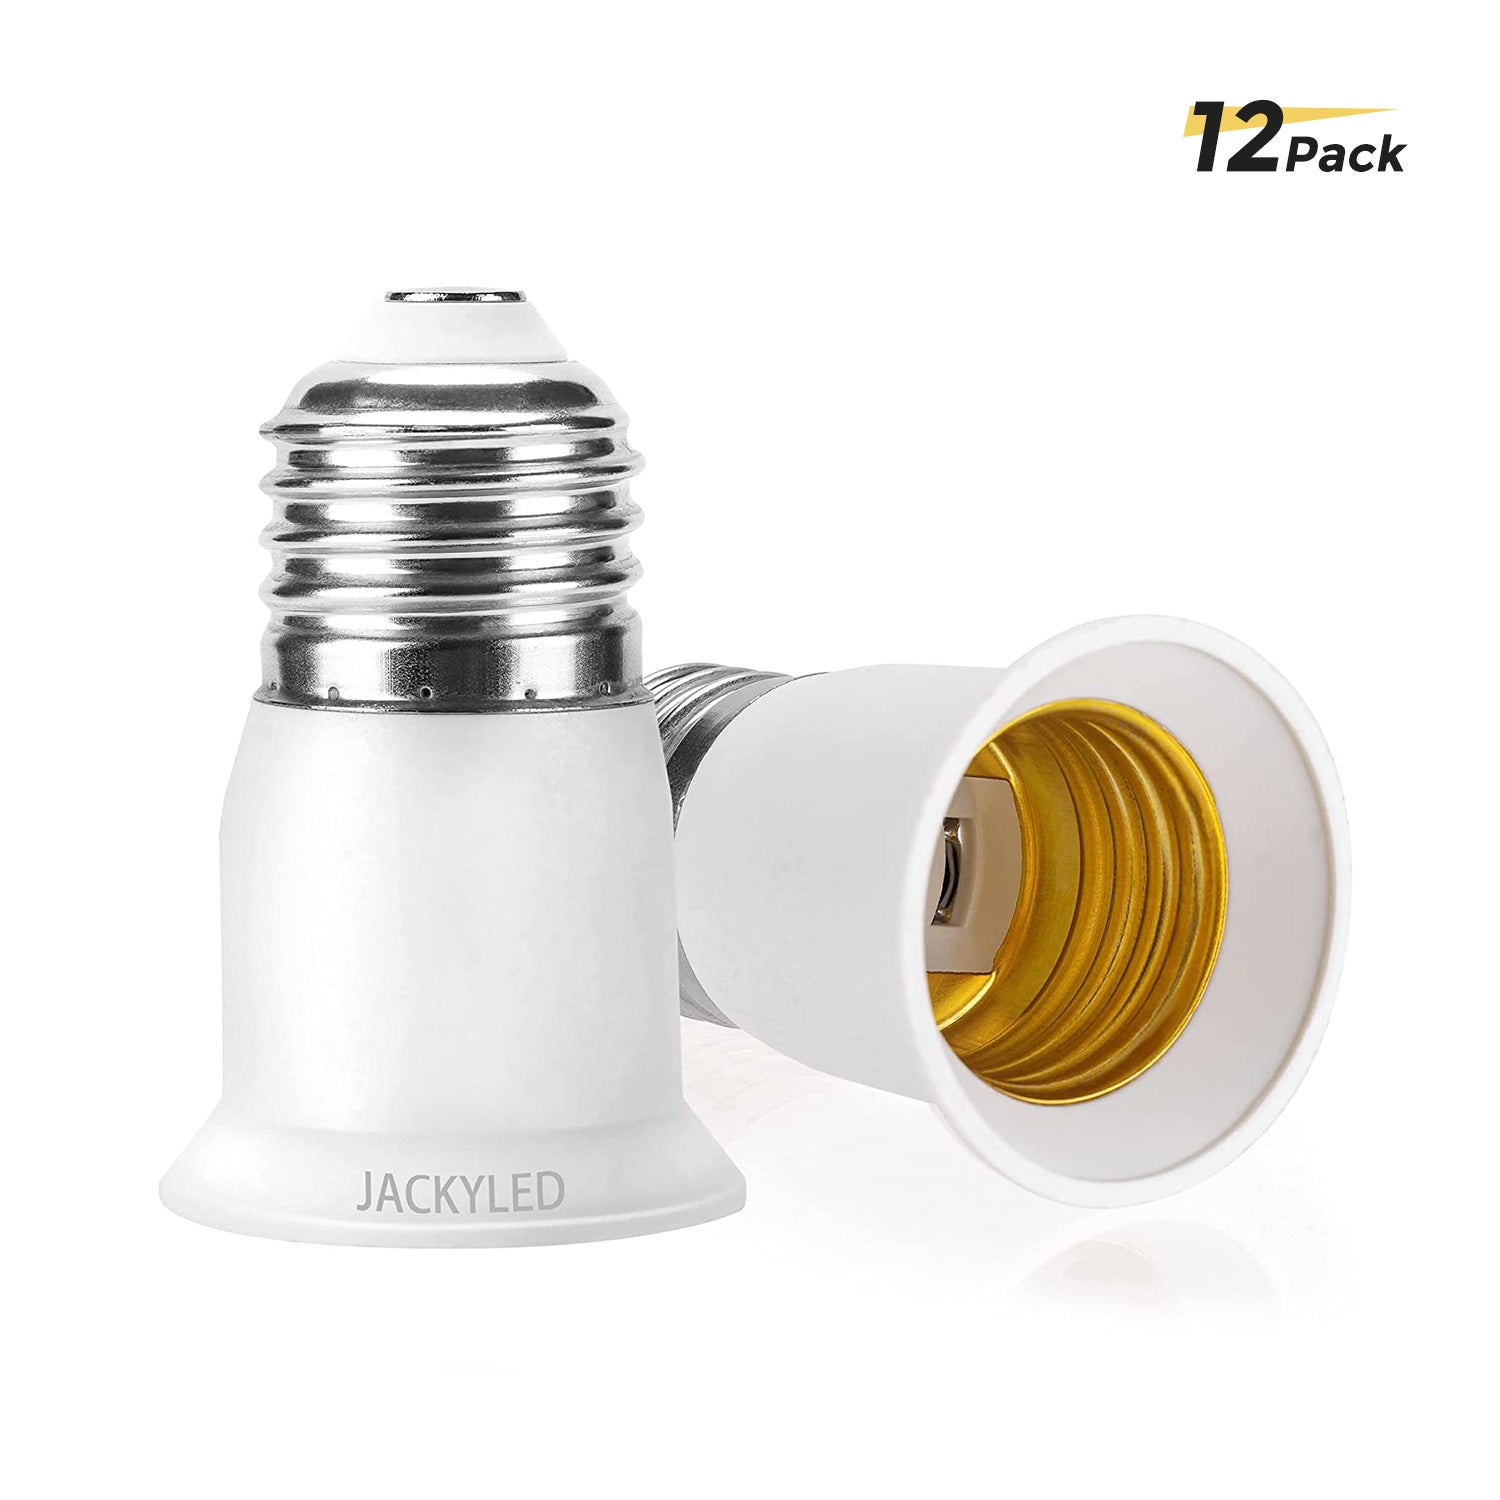 E26 to E26/E27 Light Bulb Socket Extender Light Adapter